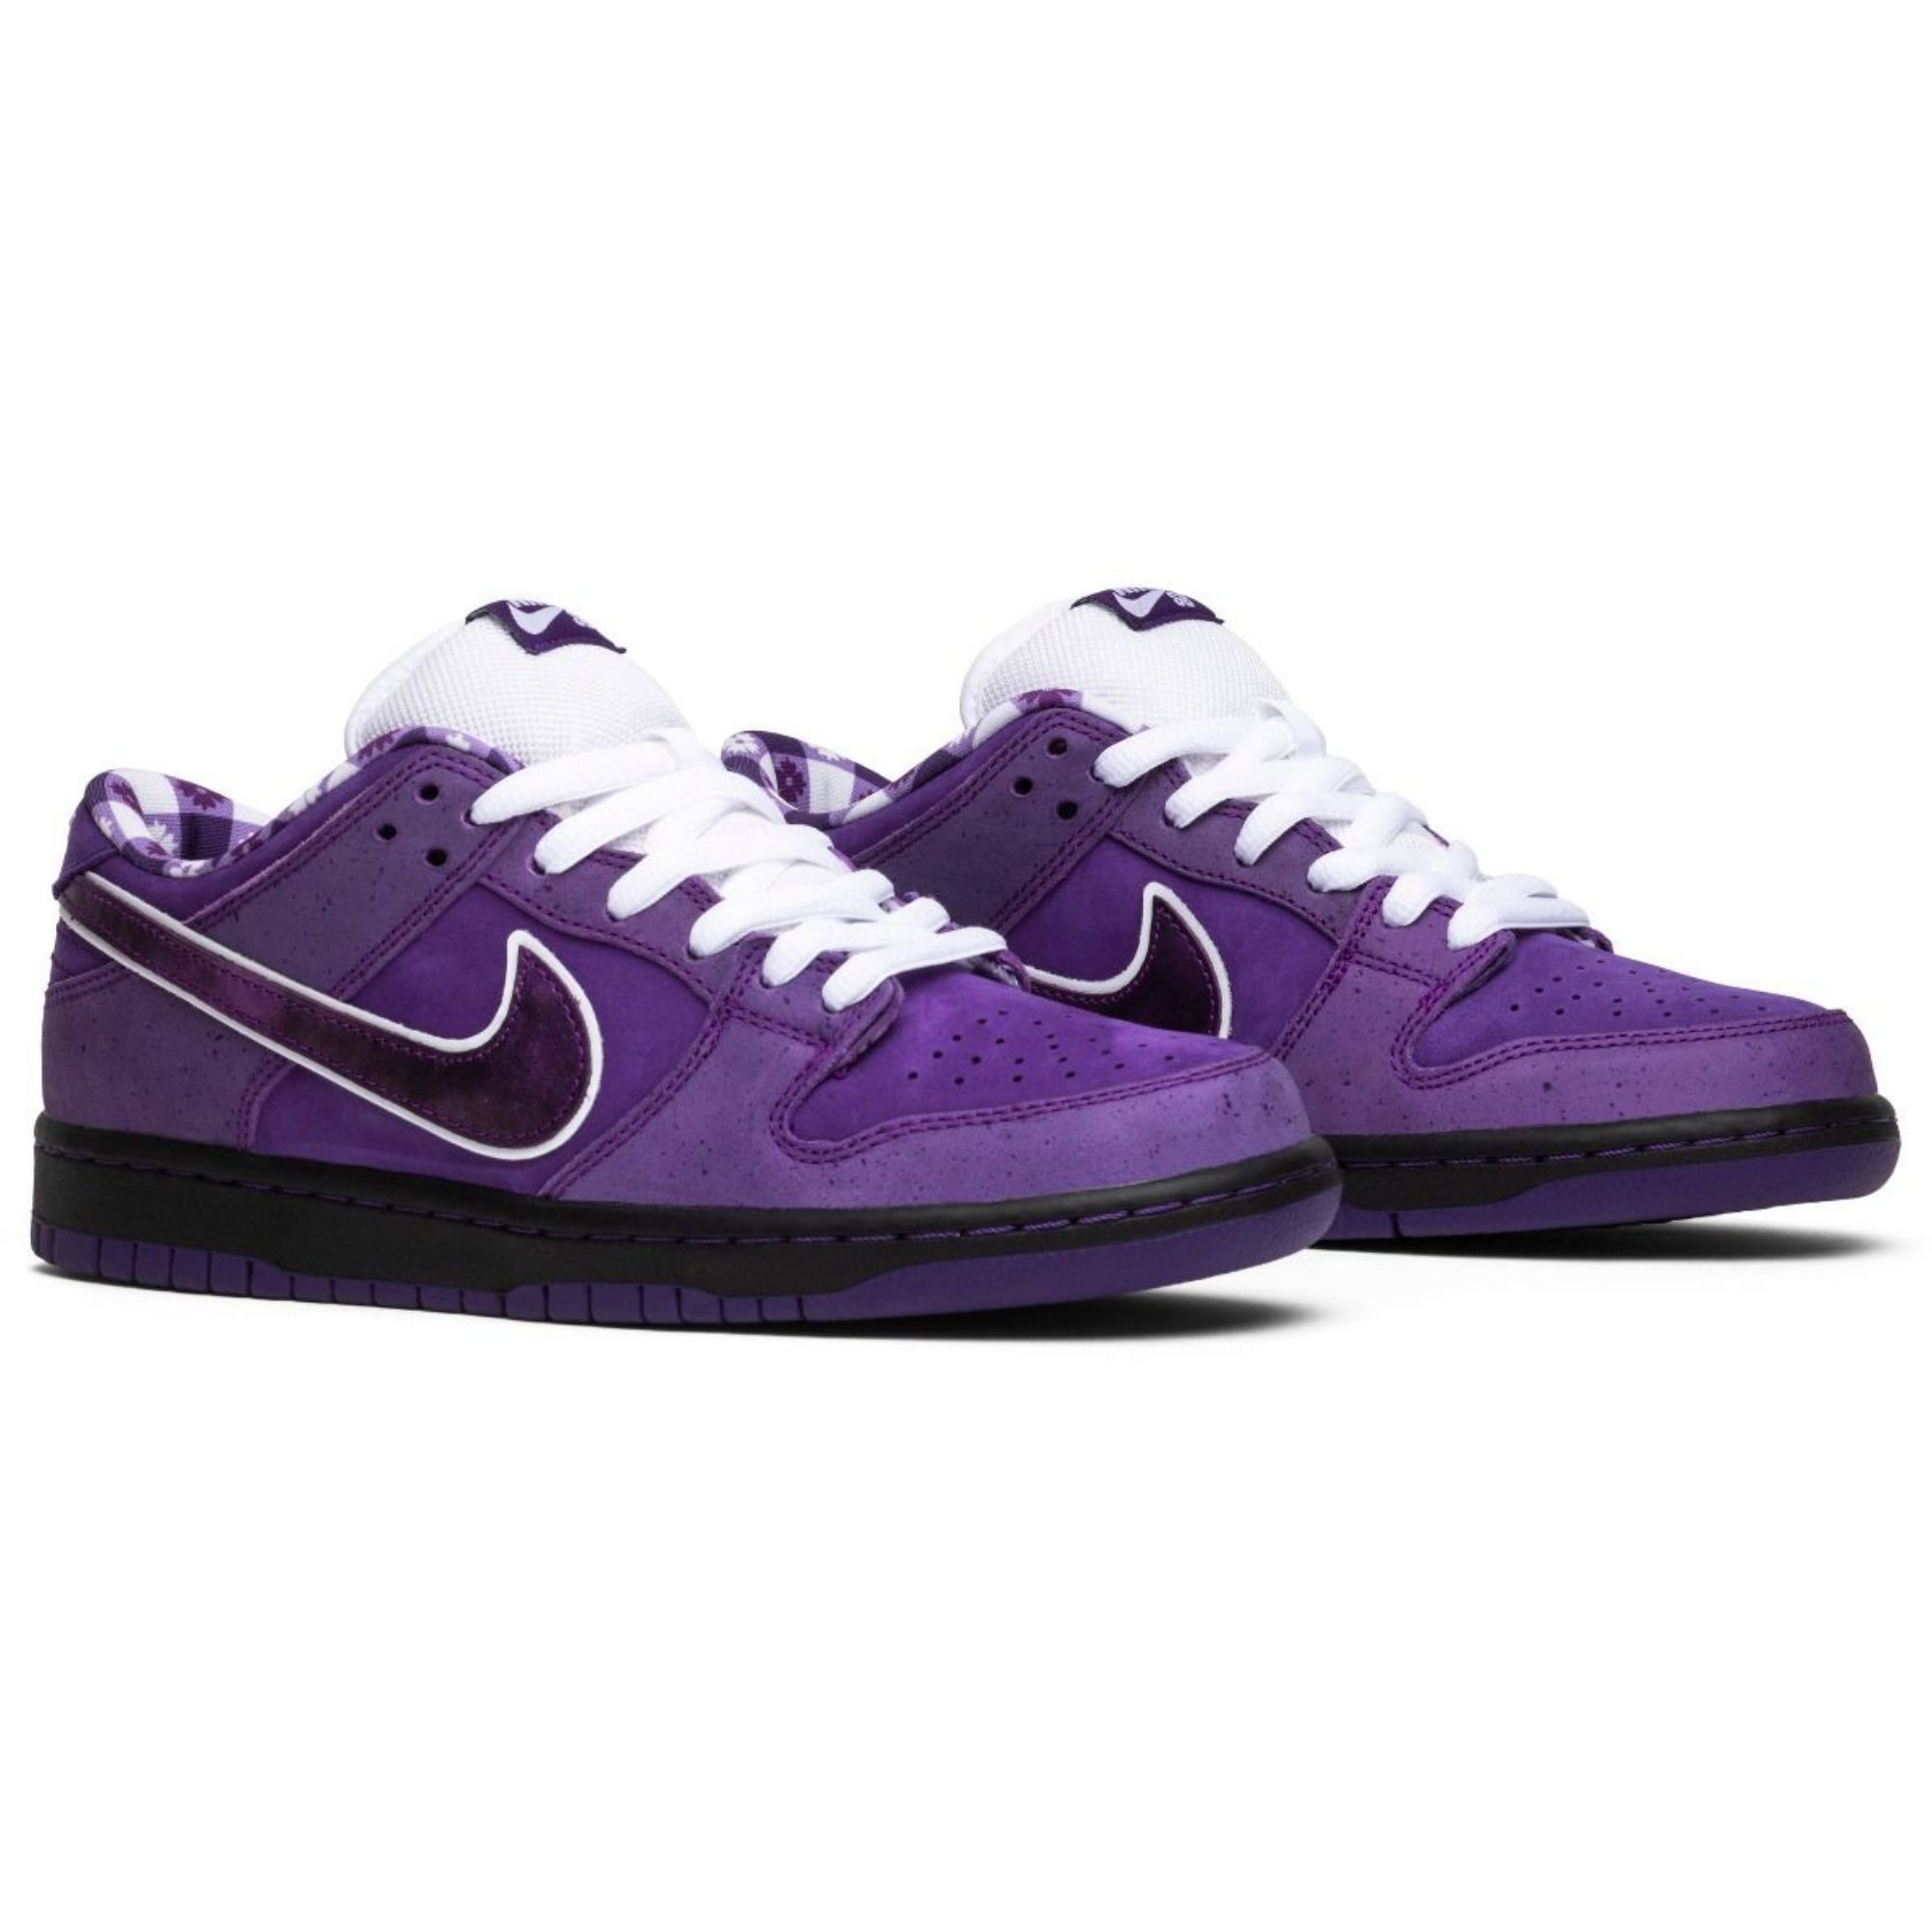 Найк лобстер. Nike SB Dunk Low Purple. Nike SB Dunk Purple. Nike SB Dunk Low Purple Pulse. Nike SB Dunk Low Pro Purple.